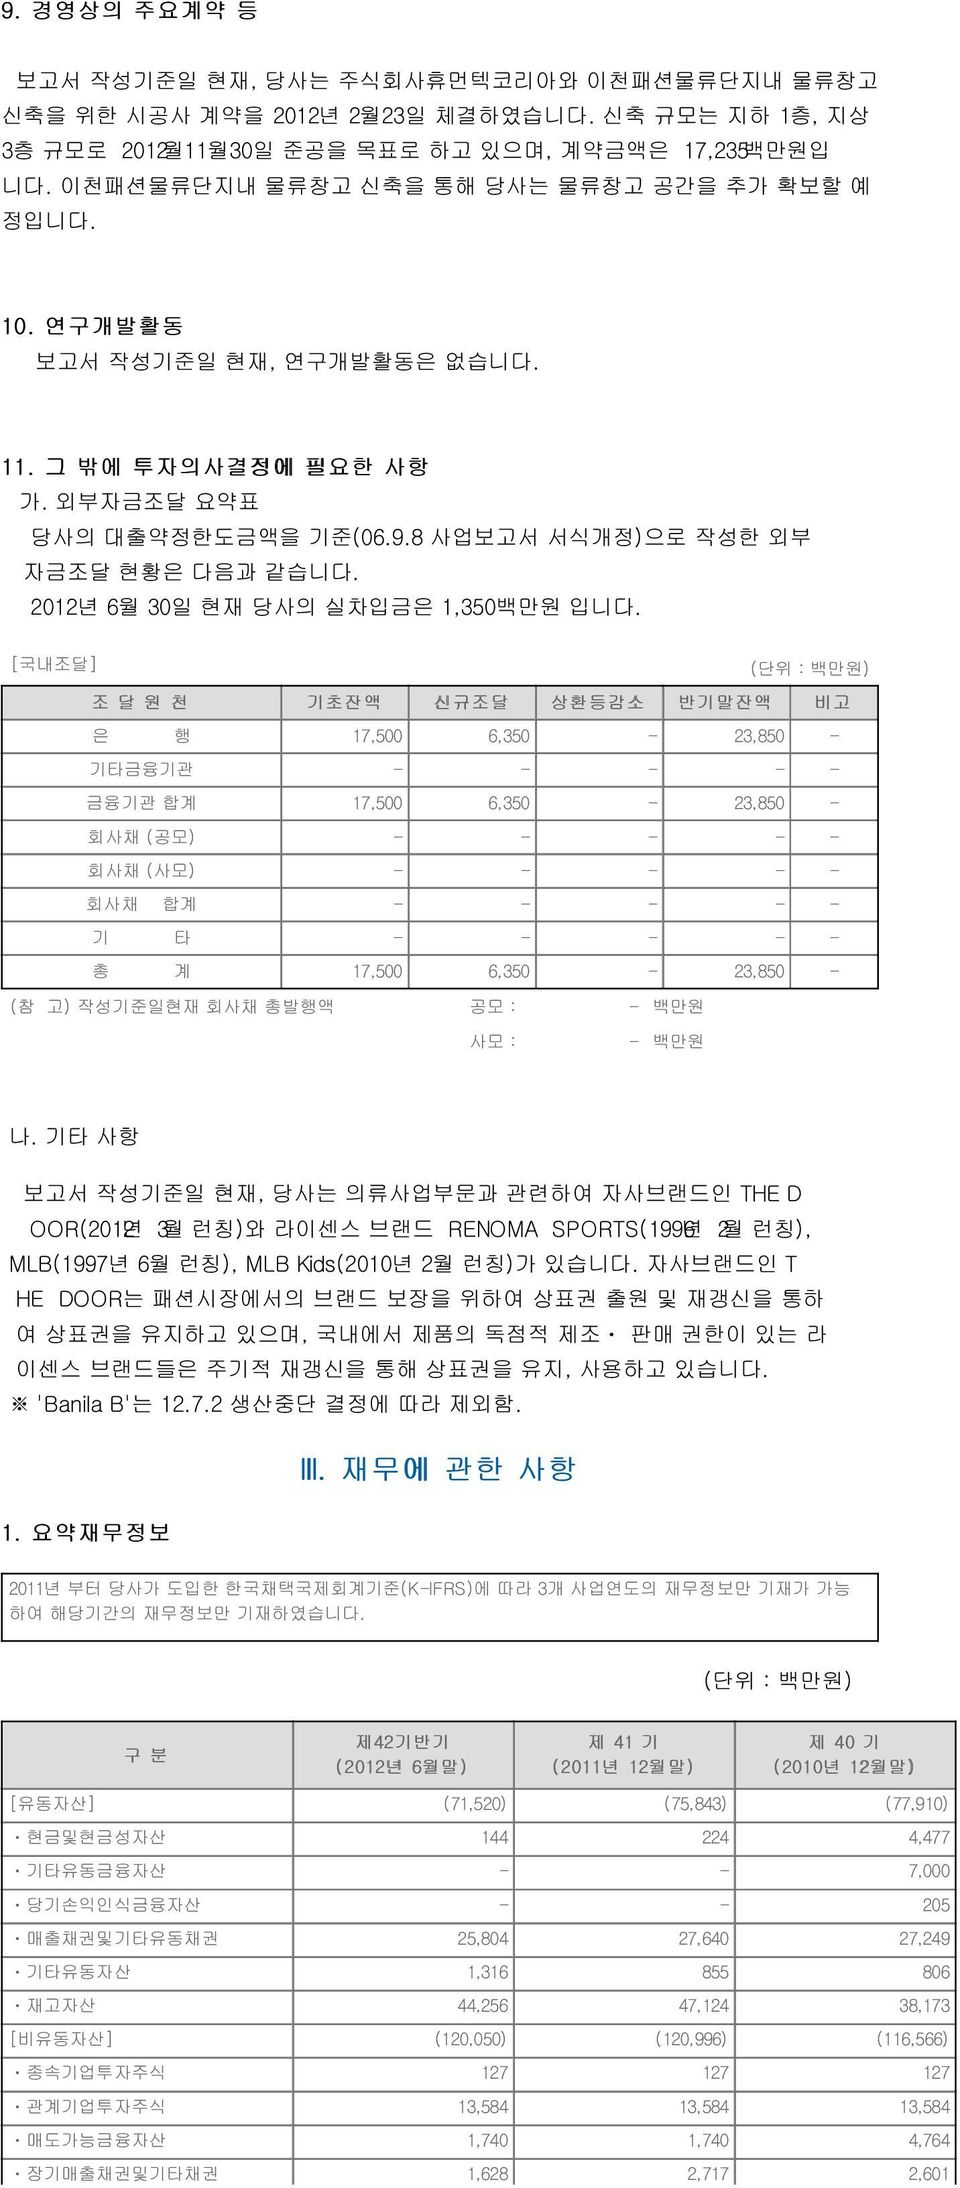 2012년 6월 30일 현재 당사의 실차입금은 1,350백만원 입니다.